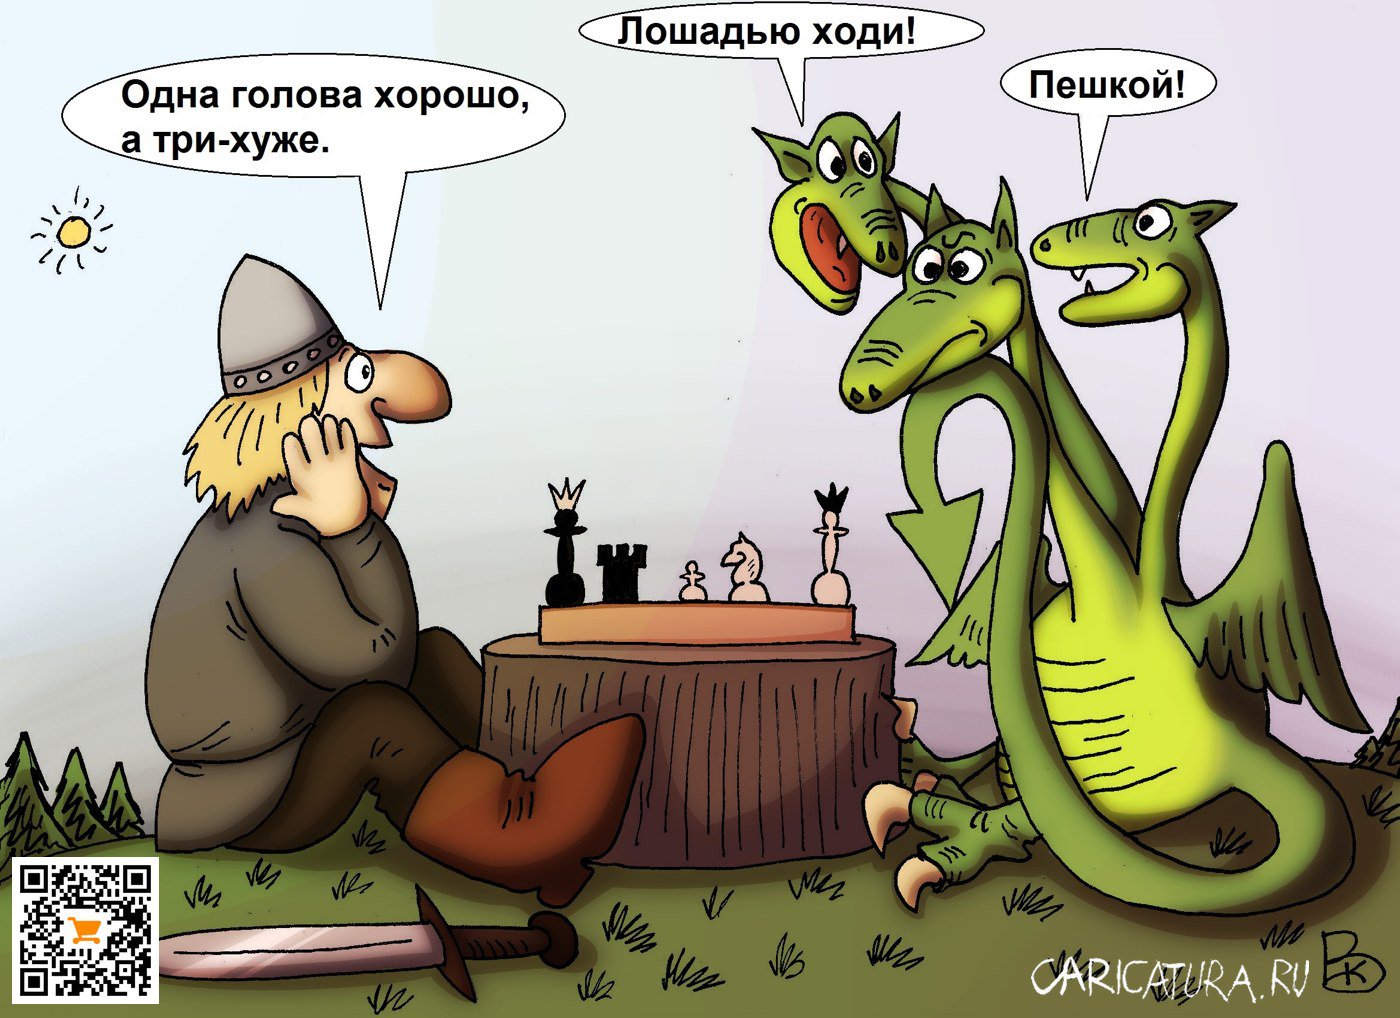 Карикатура "Три головы", Валерий Каненков